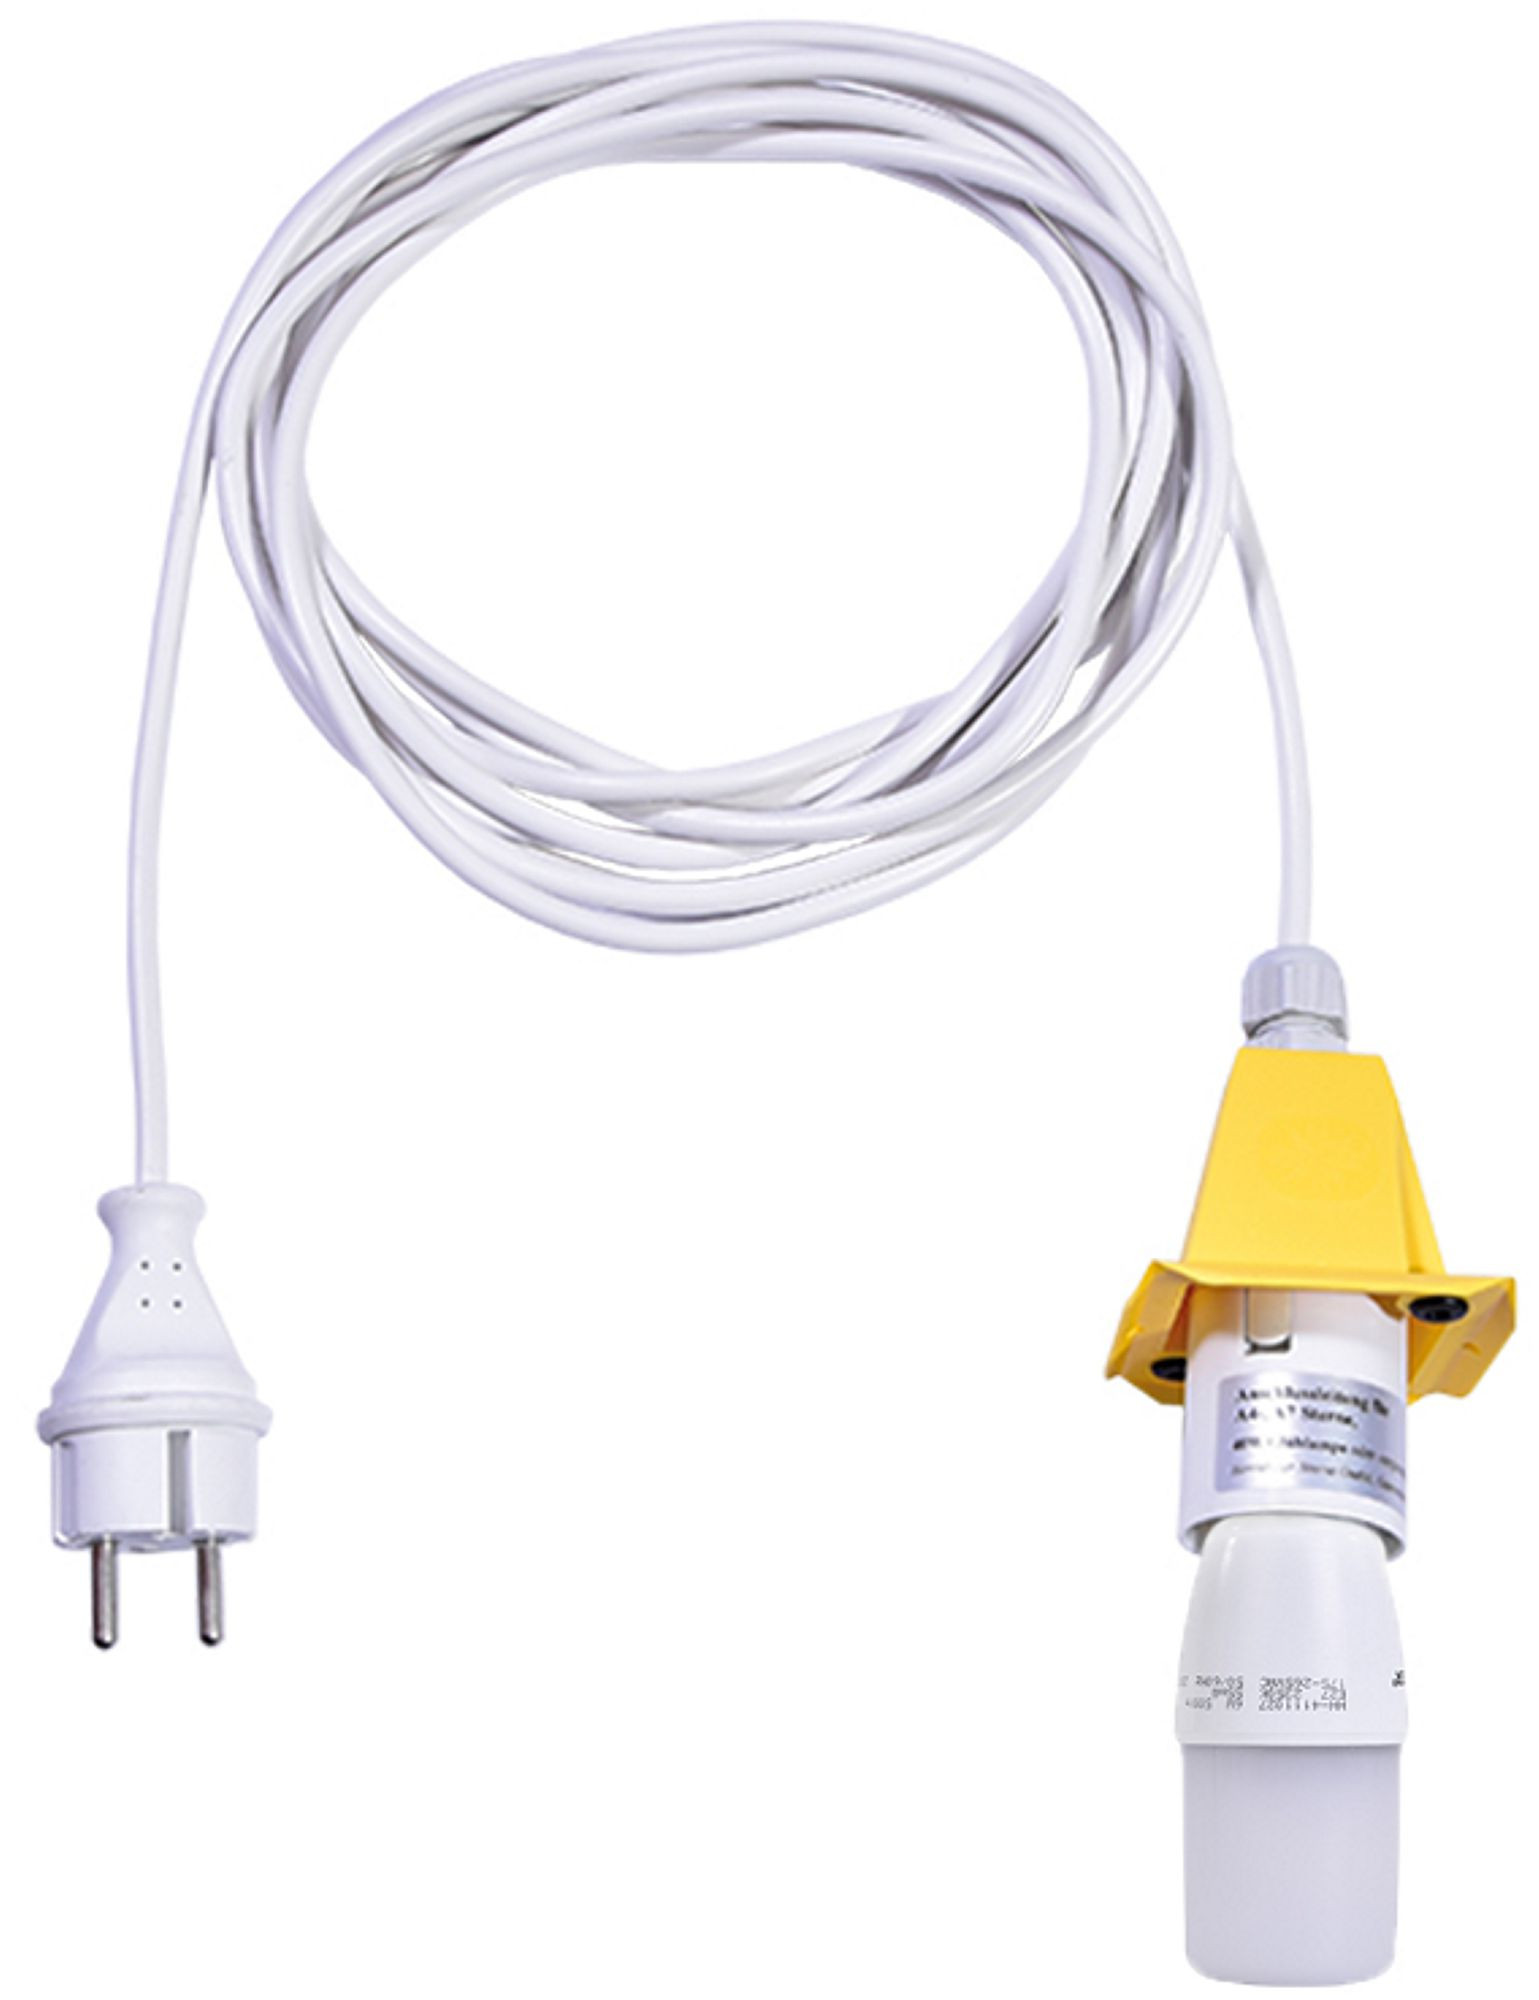 Herrnhuter Kabel für A4/A7 - weißes Kabel 5m gelb